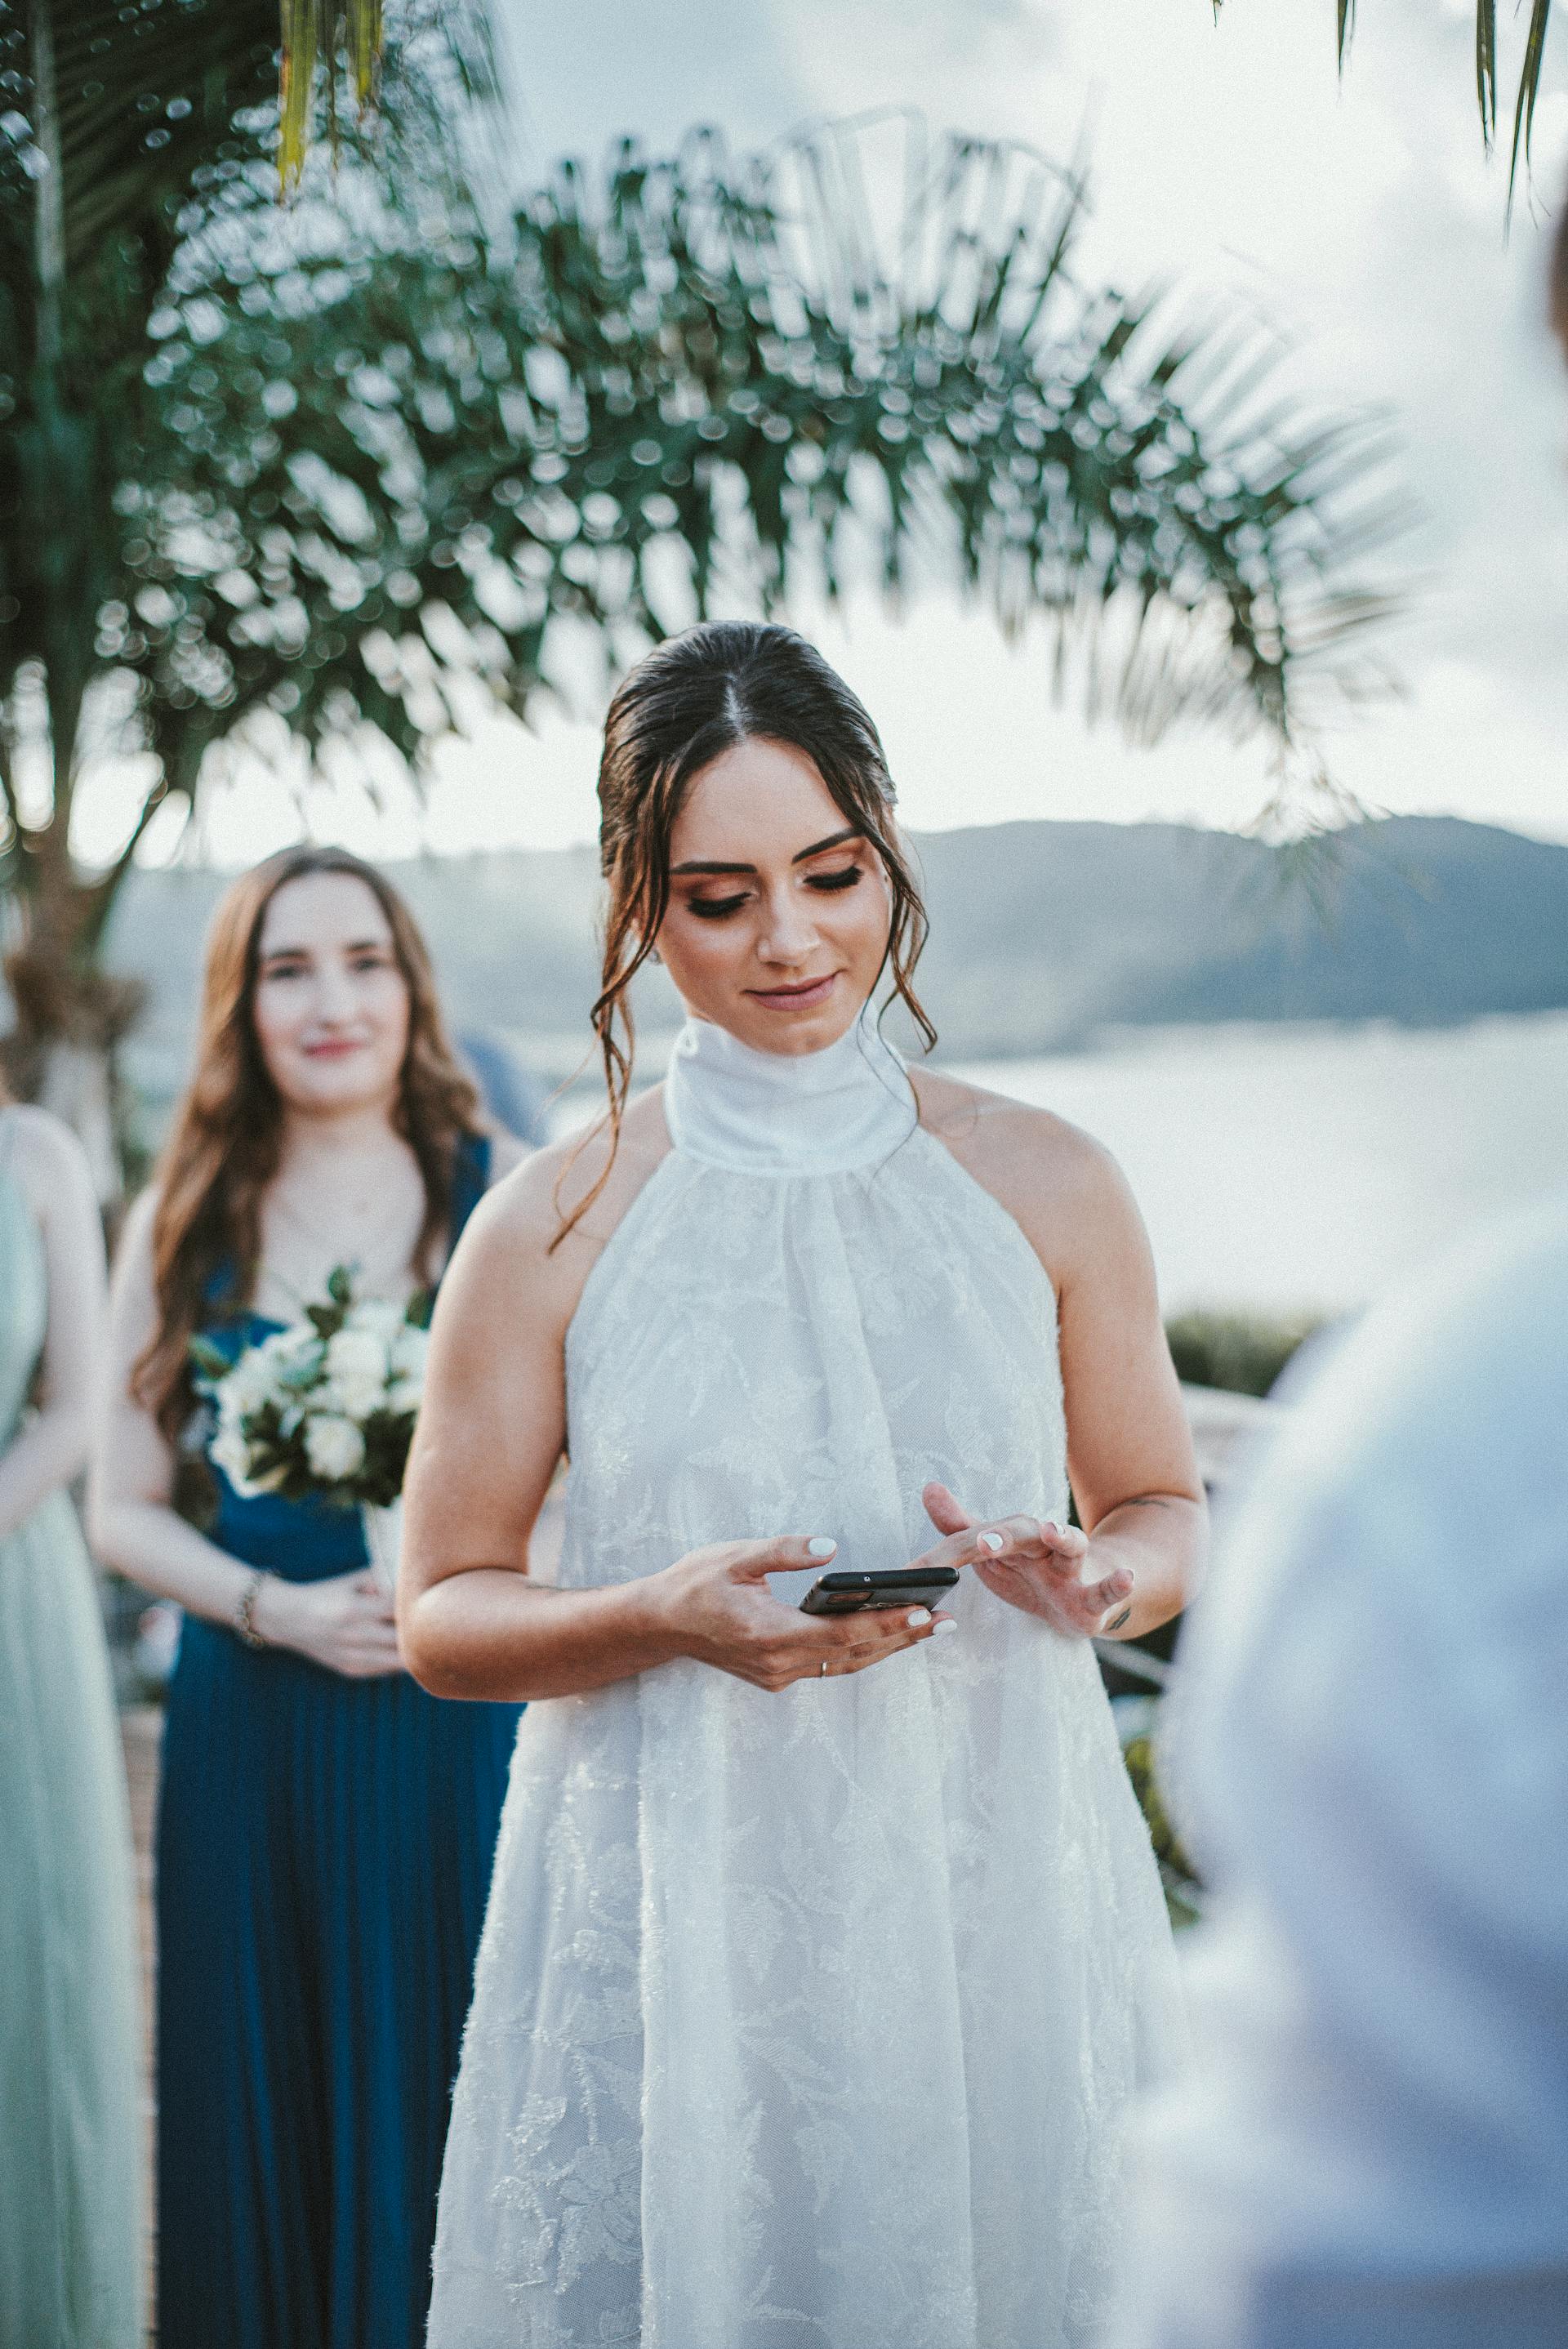 Eine Braut, die ihr Telefon überprüft | Quelle: Pexels